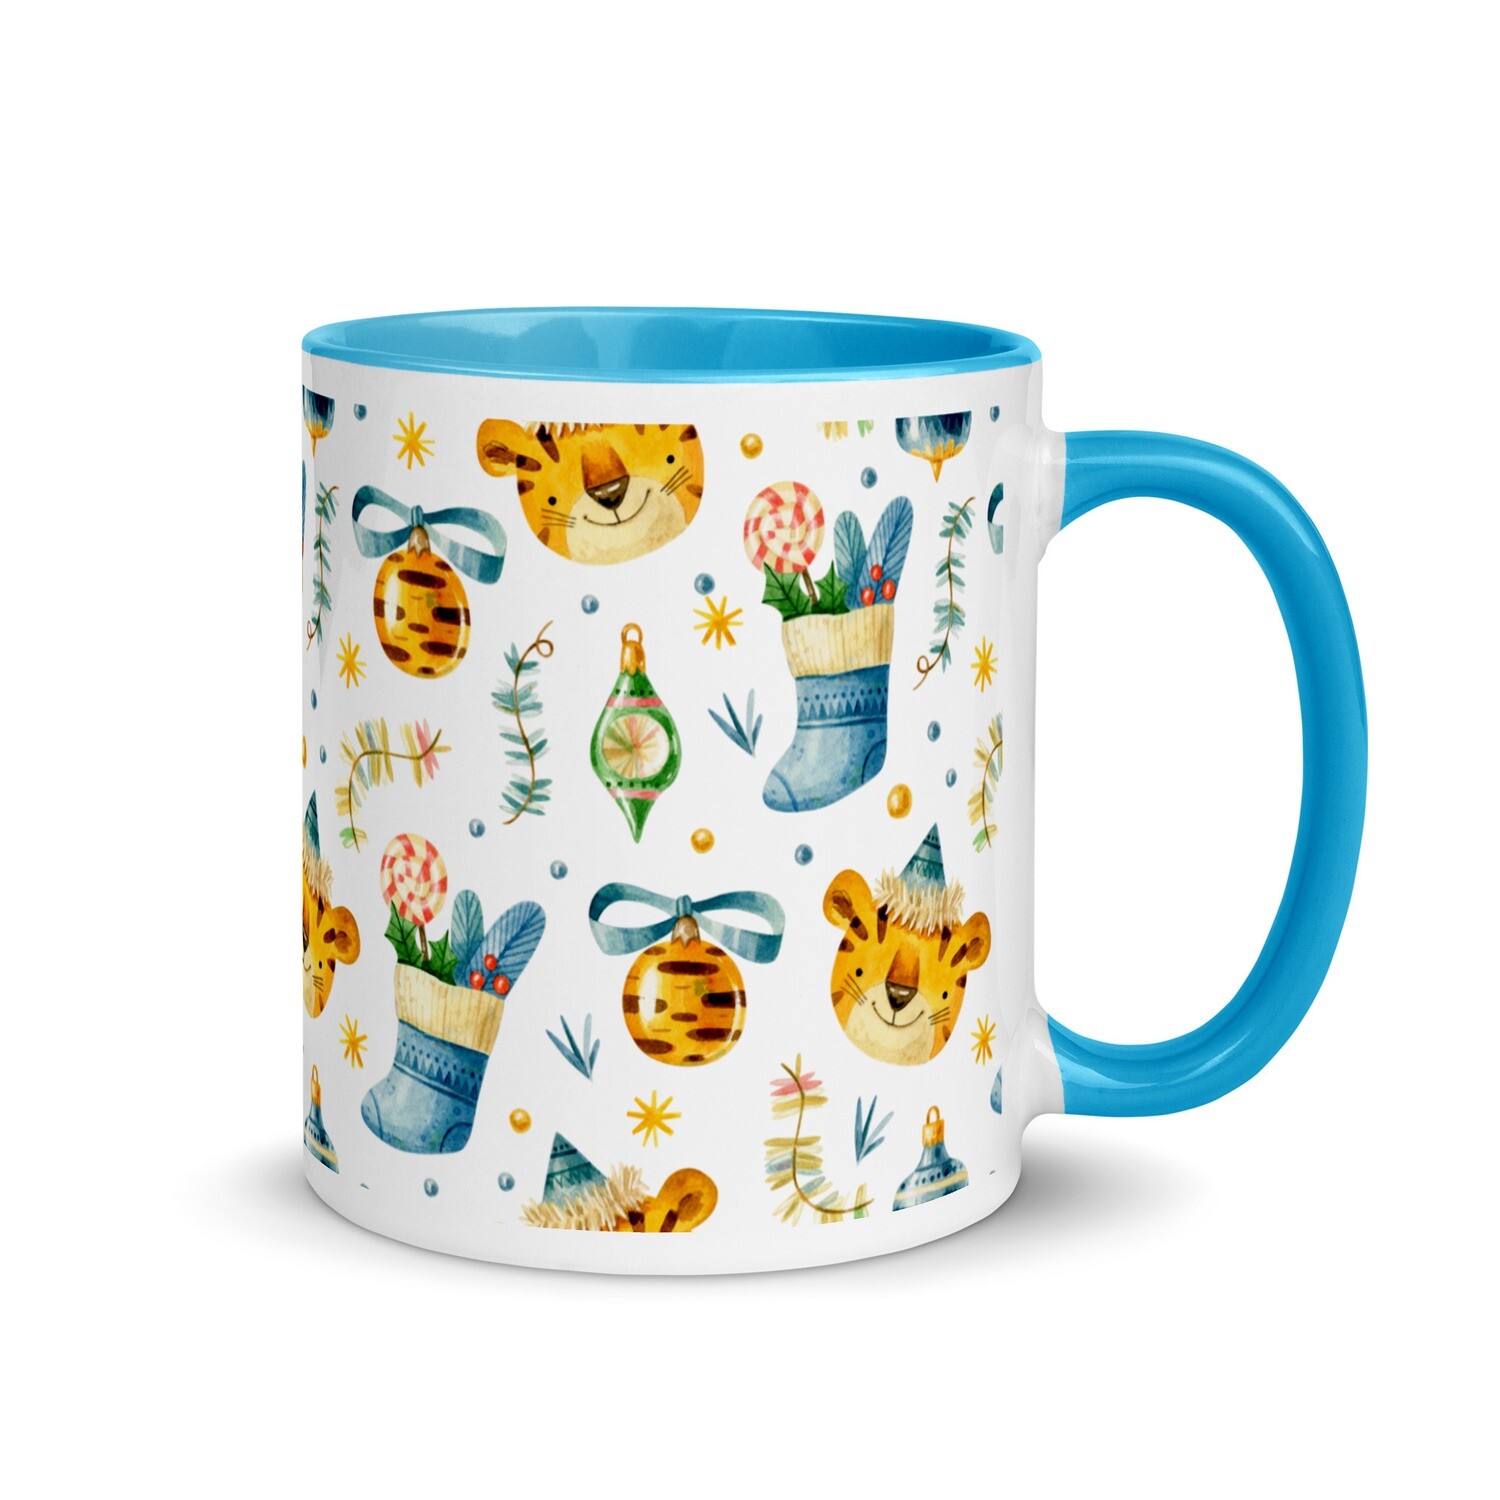 Festive mug - Design No. 4